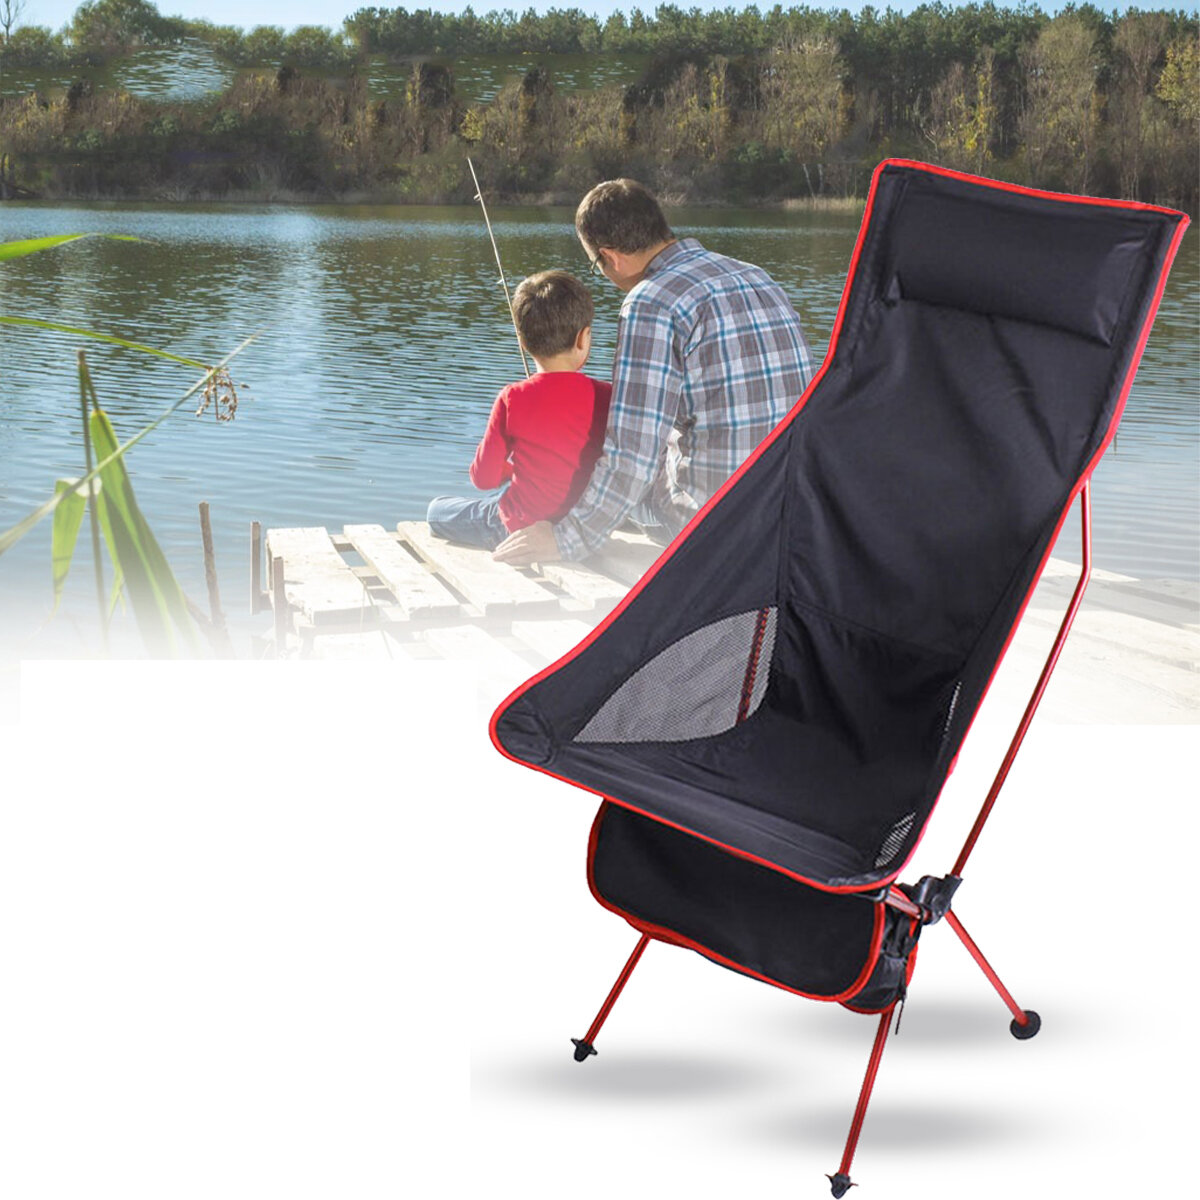 Sedia pieghevole leggera e portatile in lega di alluminio per il tempo libero all'aperto, la spiaggia e i viaggi.